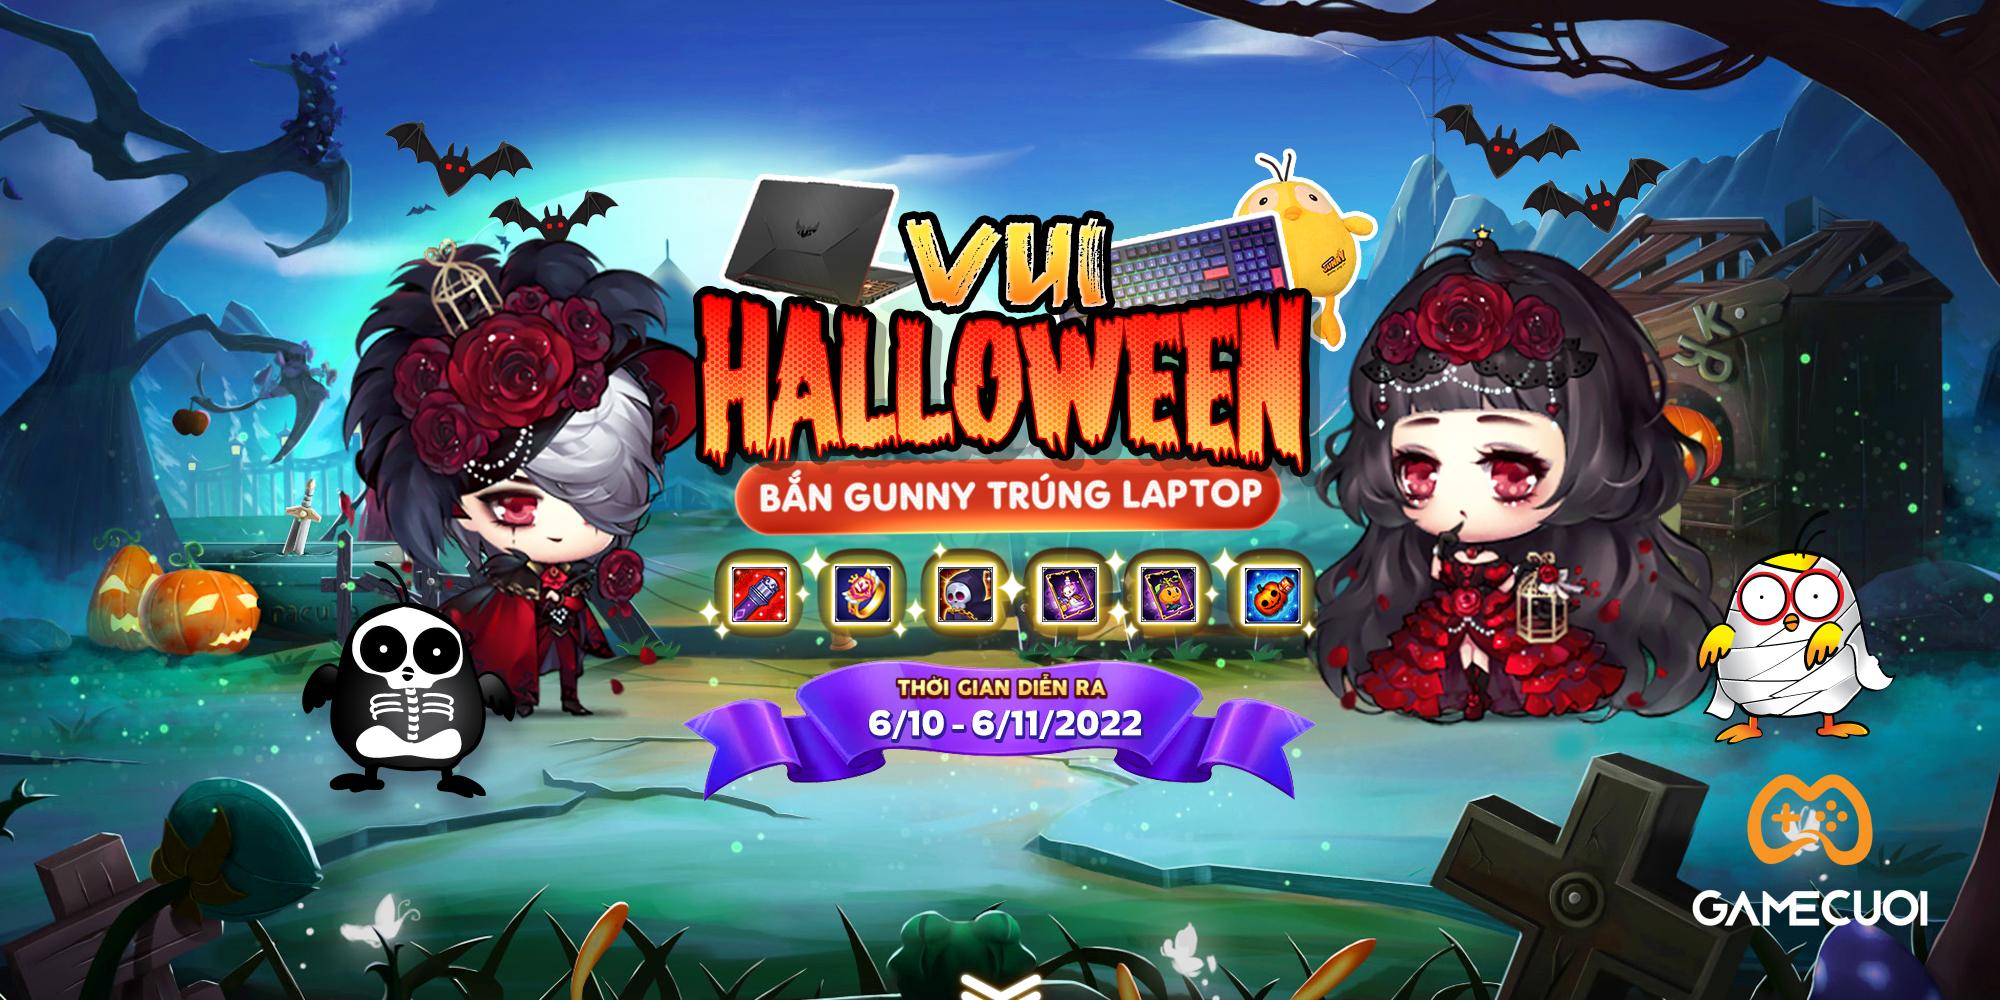 Gunny PC: Mùa Halloween này, tích cực quay tay đi vận may sẽ đến!